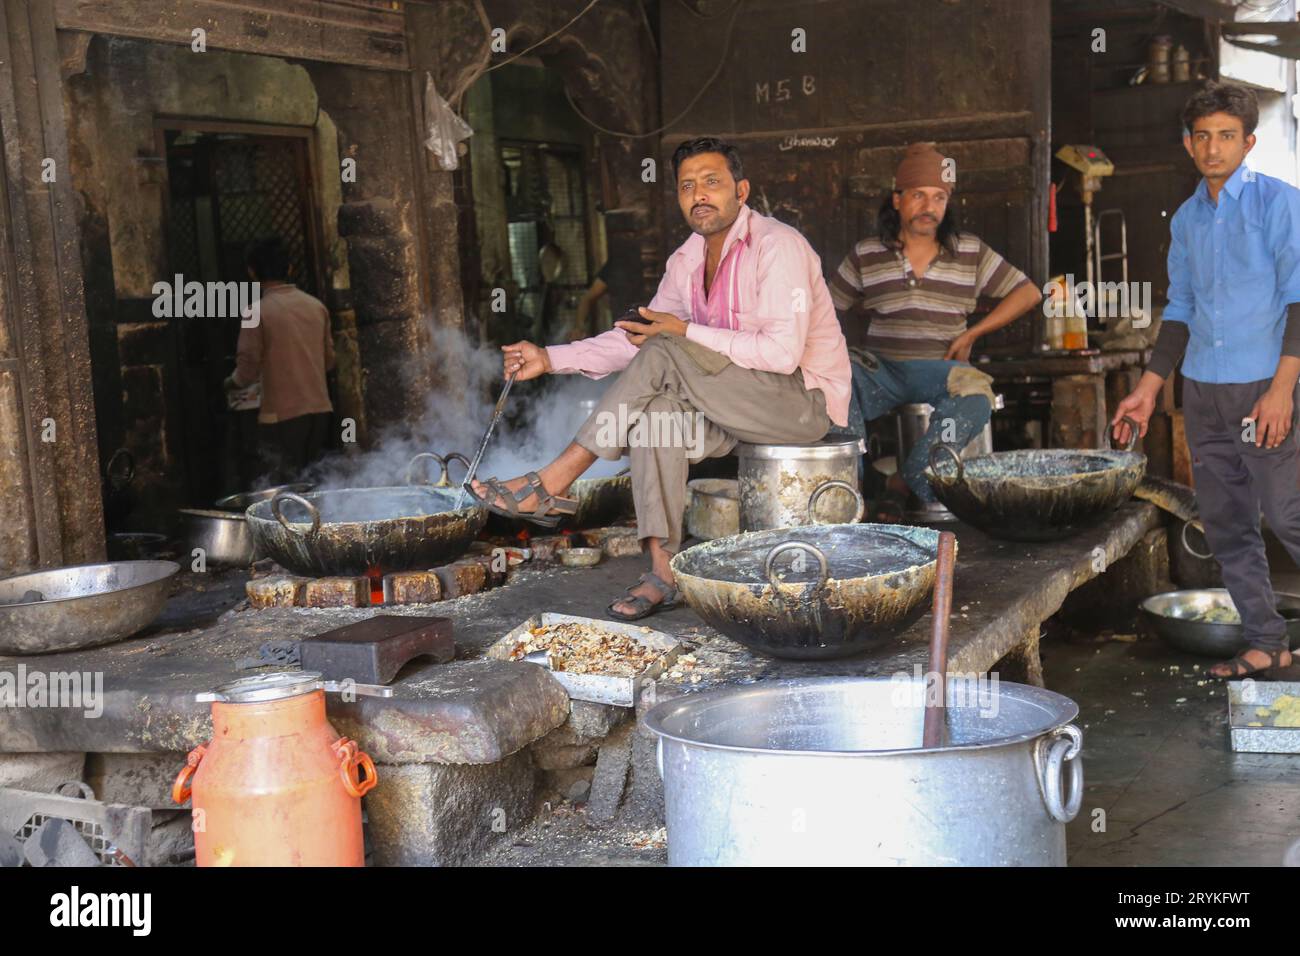 Jodhpur, Rajasthan, India - 11 gennaio 2017: Un uomo indiano che coccola nella cucina a legna, con pentole in un bazar di Street food Foto Stock